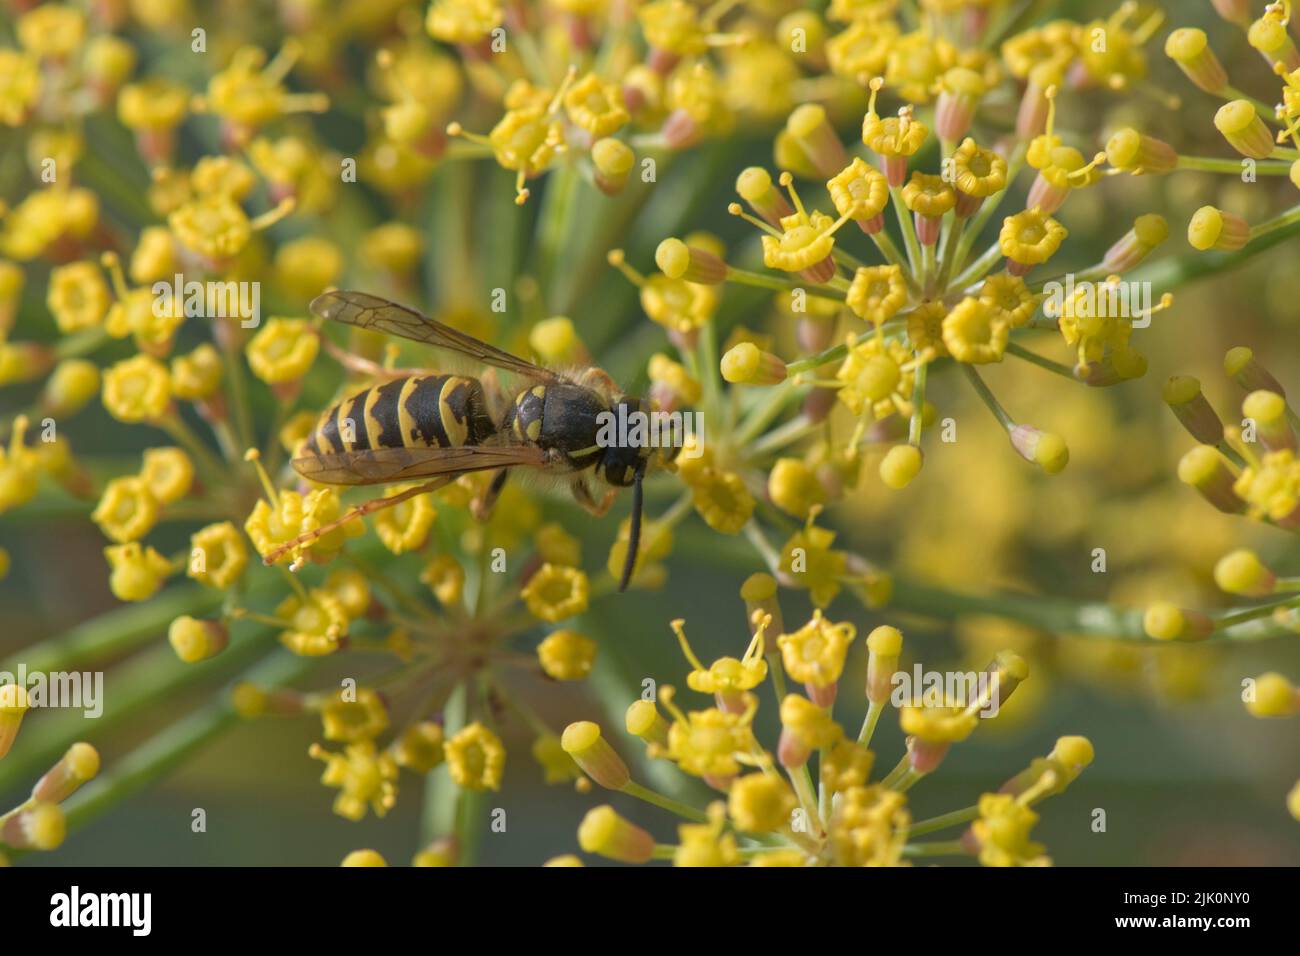 Auf der Dolde eines Gartenkrautes, im Juli, blüht die gelbe Wespe (Vespula vulgaris), bestäubendes Fenchel (Foeniculum vulgaris) Stockfoto